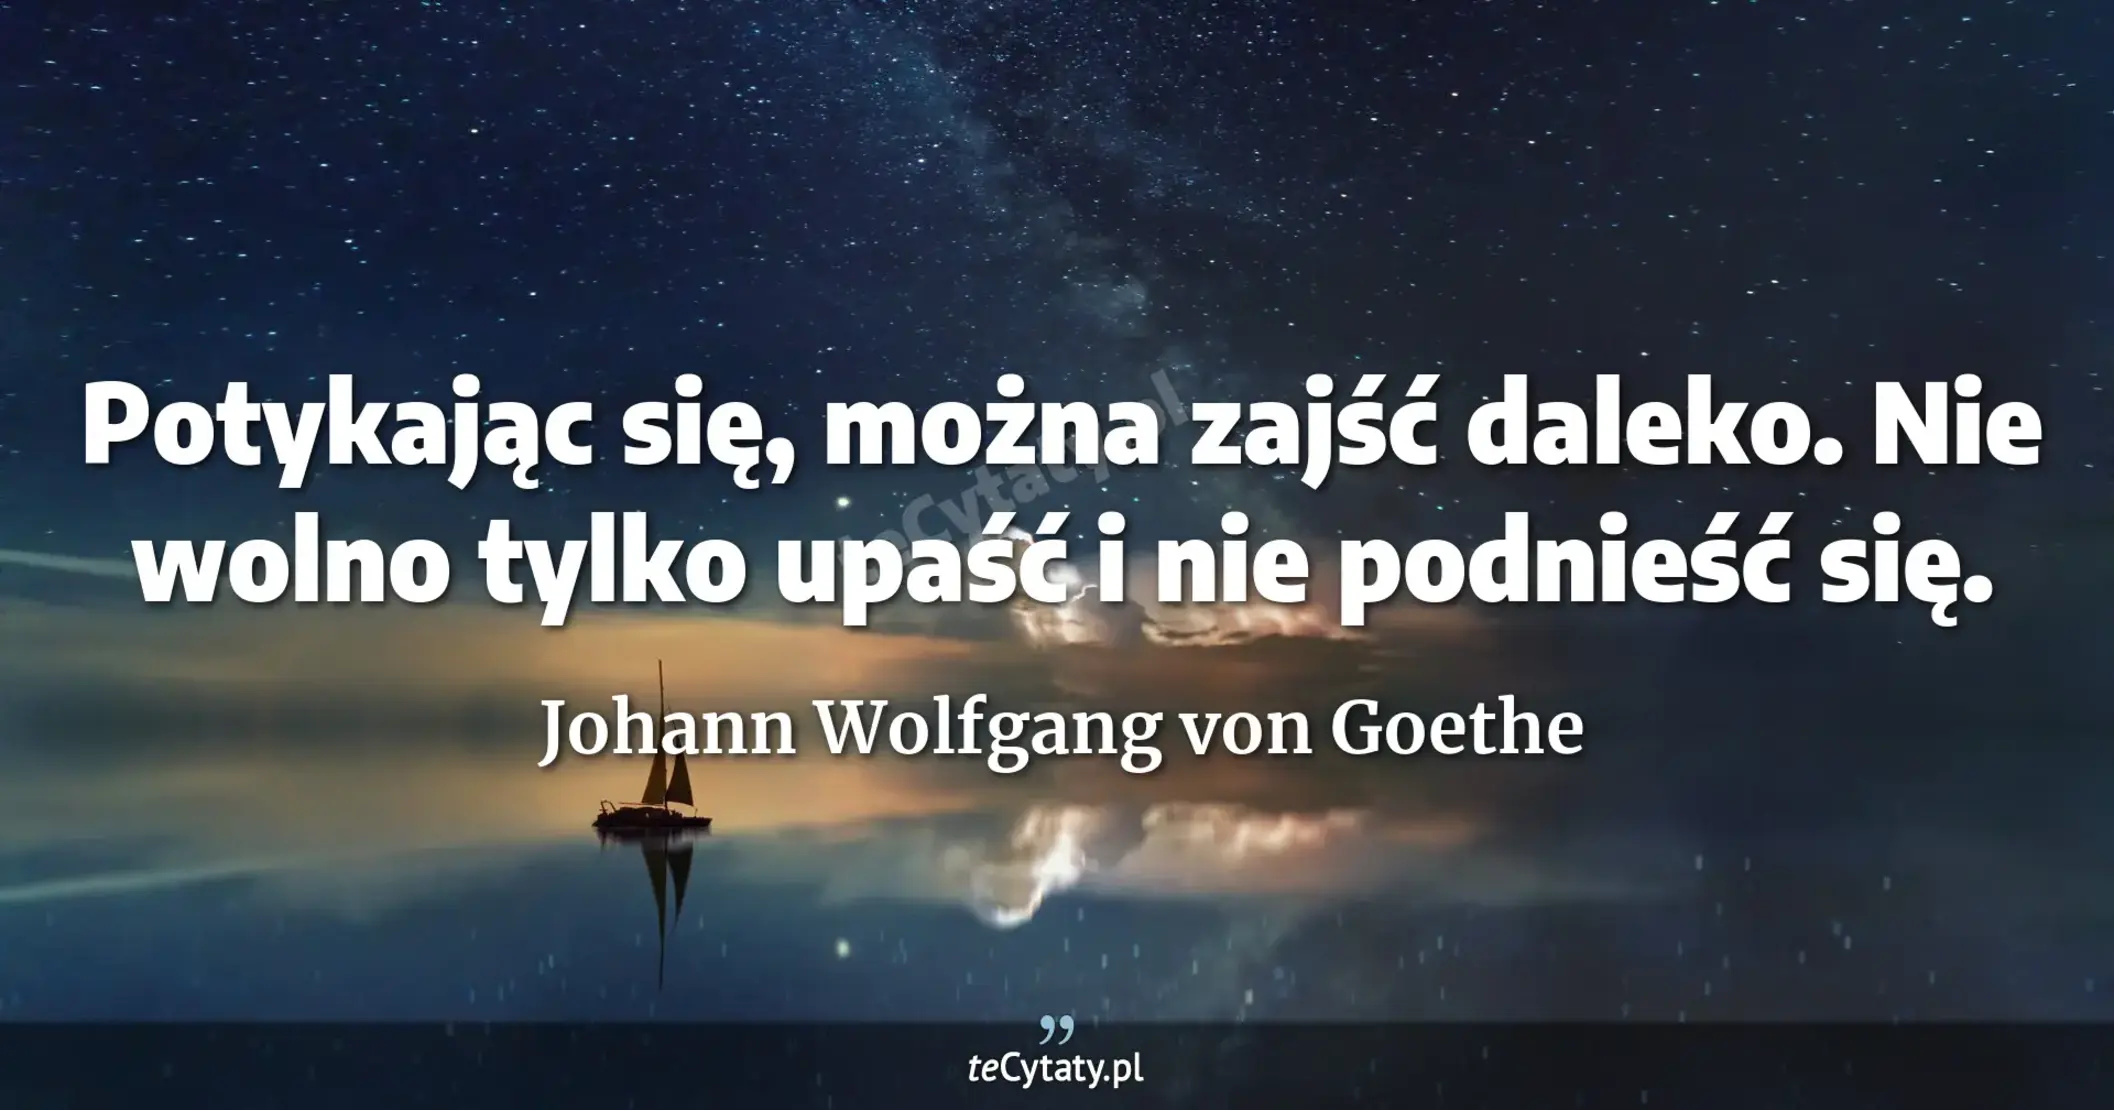 Potykając się, można zajść daleko. Nie wolno tylko upaść i nie podnieść się. - Johann Wolfgang von Goethe